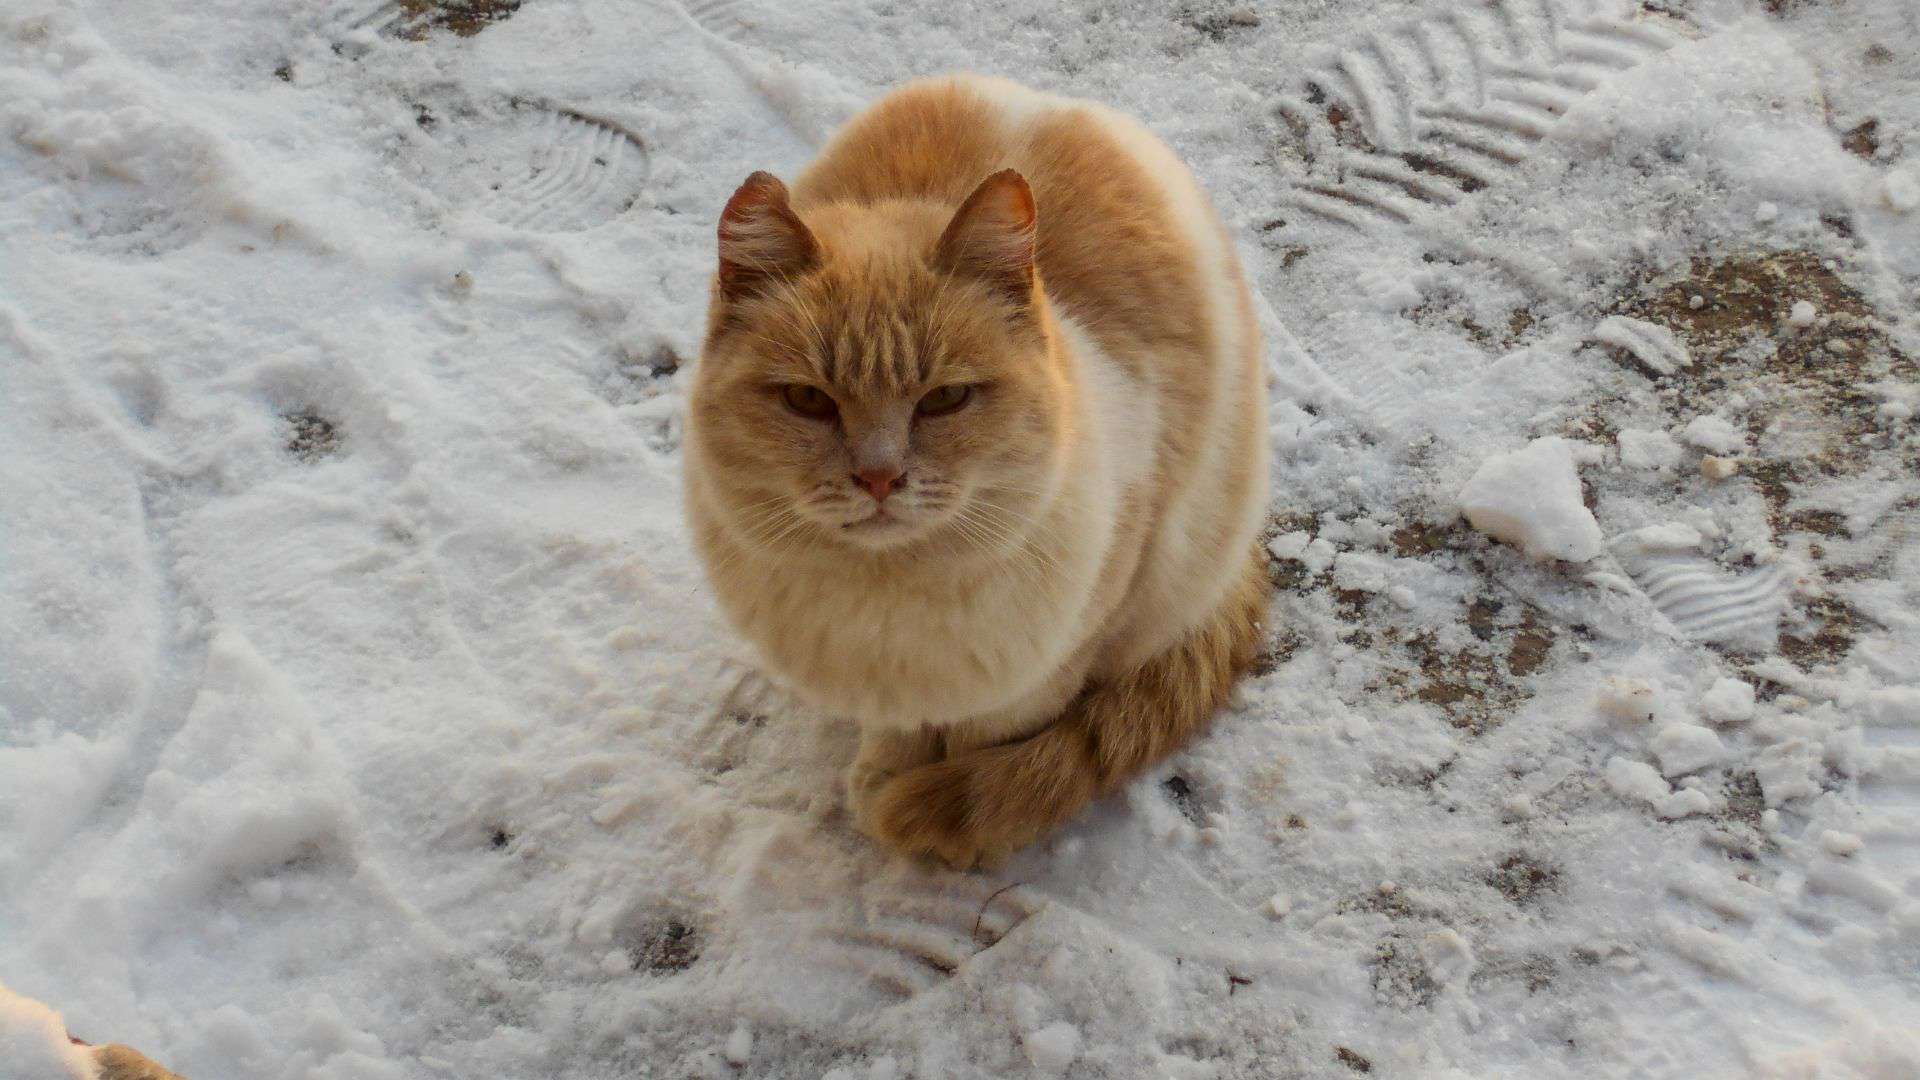 cat on snow